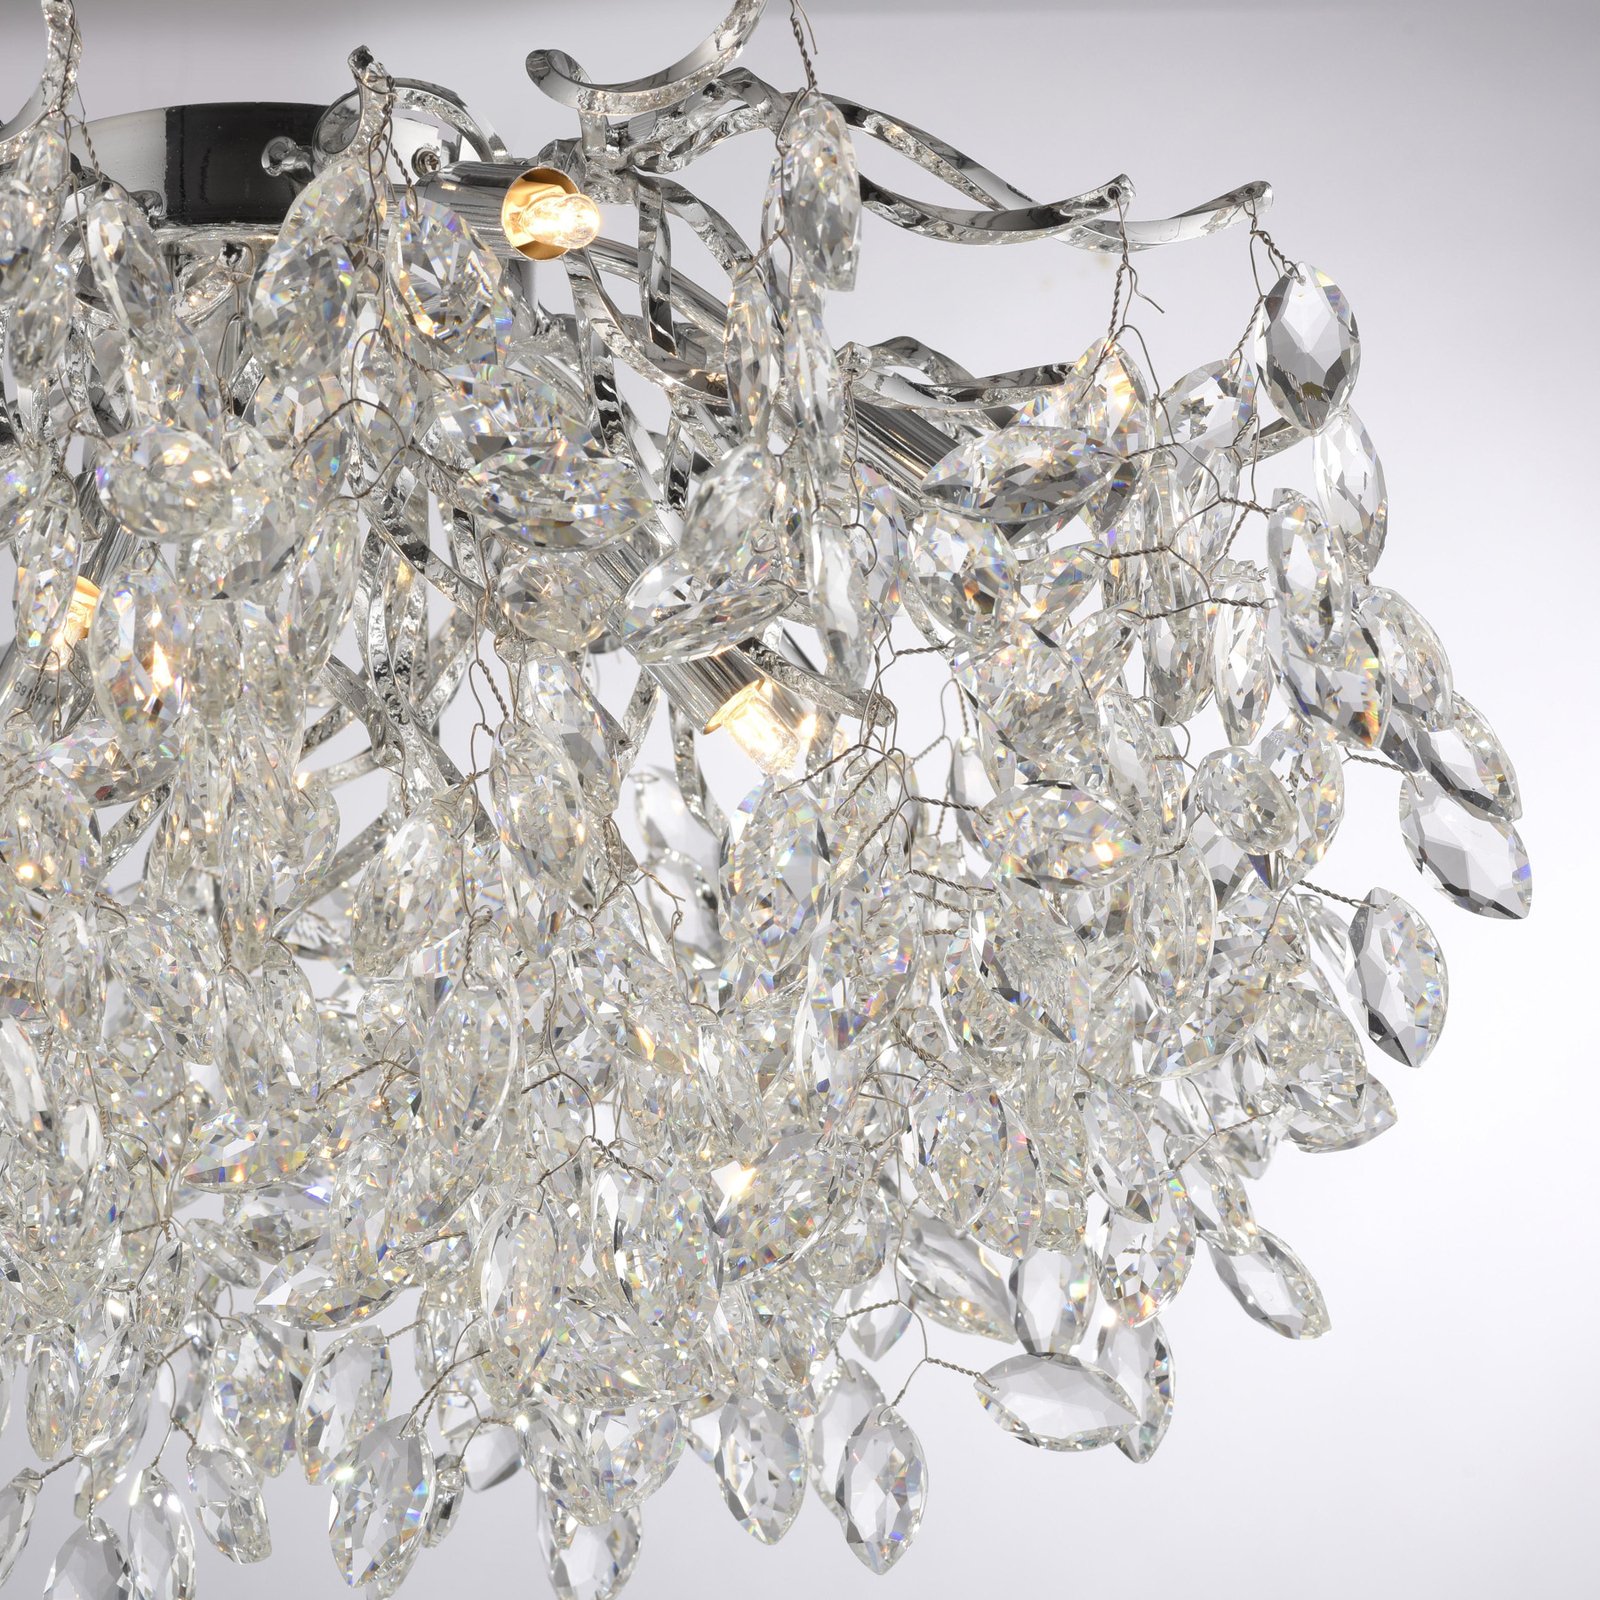 Paul Neuhaus Ricicle taklampe, krystallpendel, Ø 60 cm